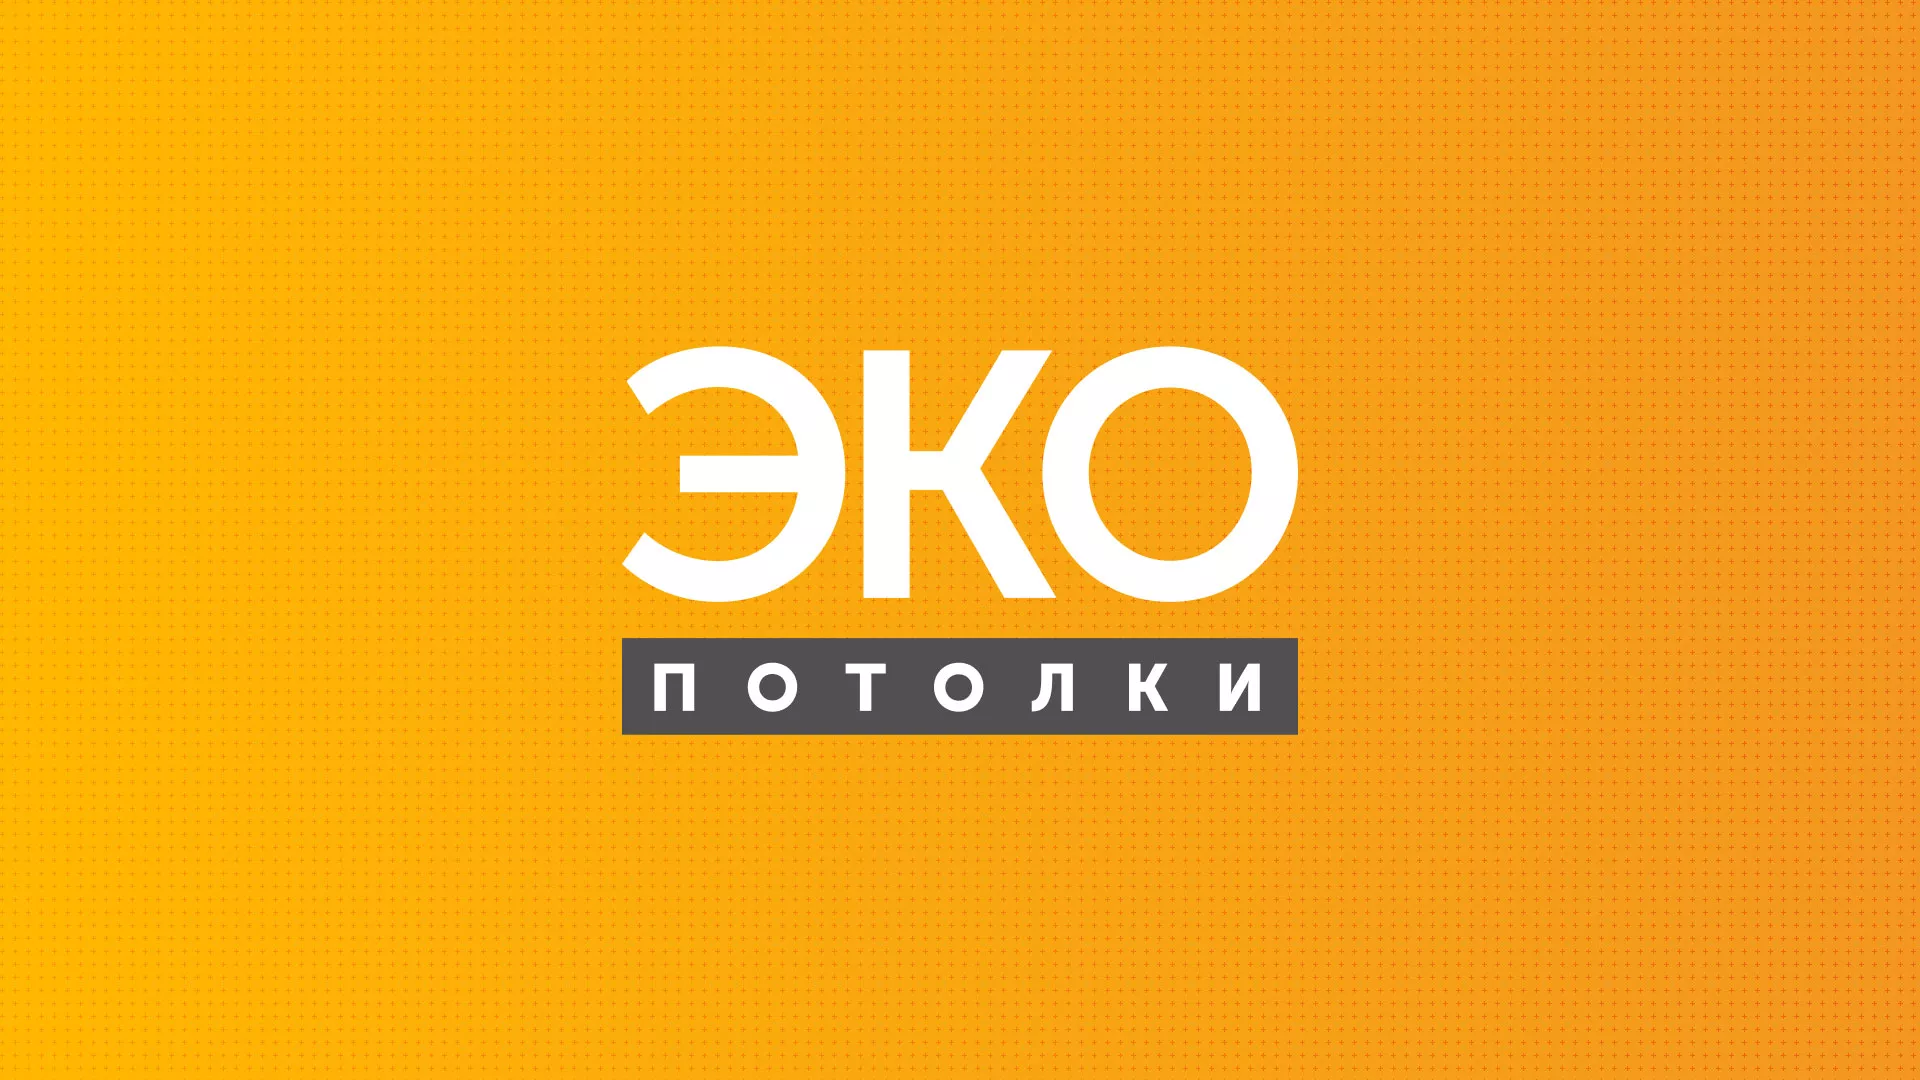 Разработка сайта по натяжным потолкам «Эко Потолки» в Богородске